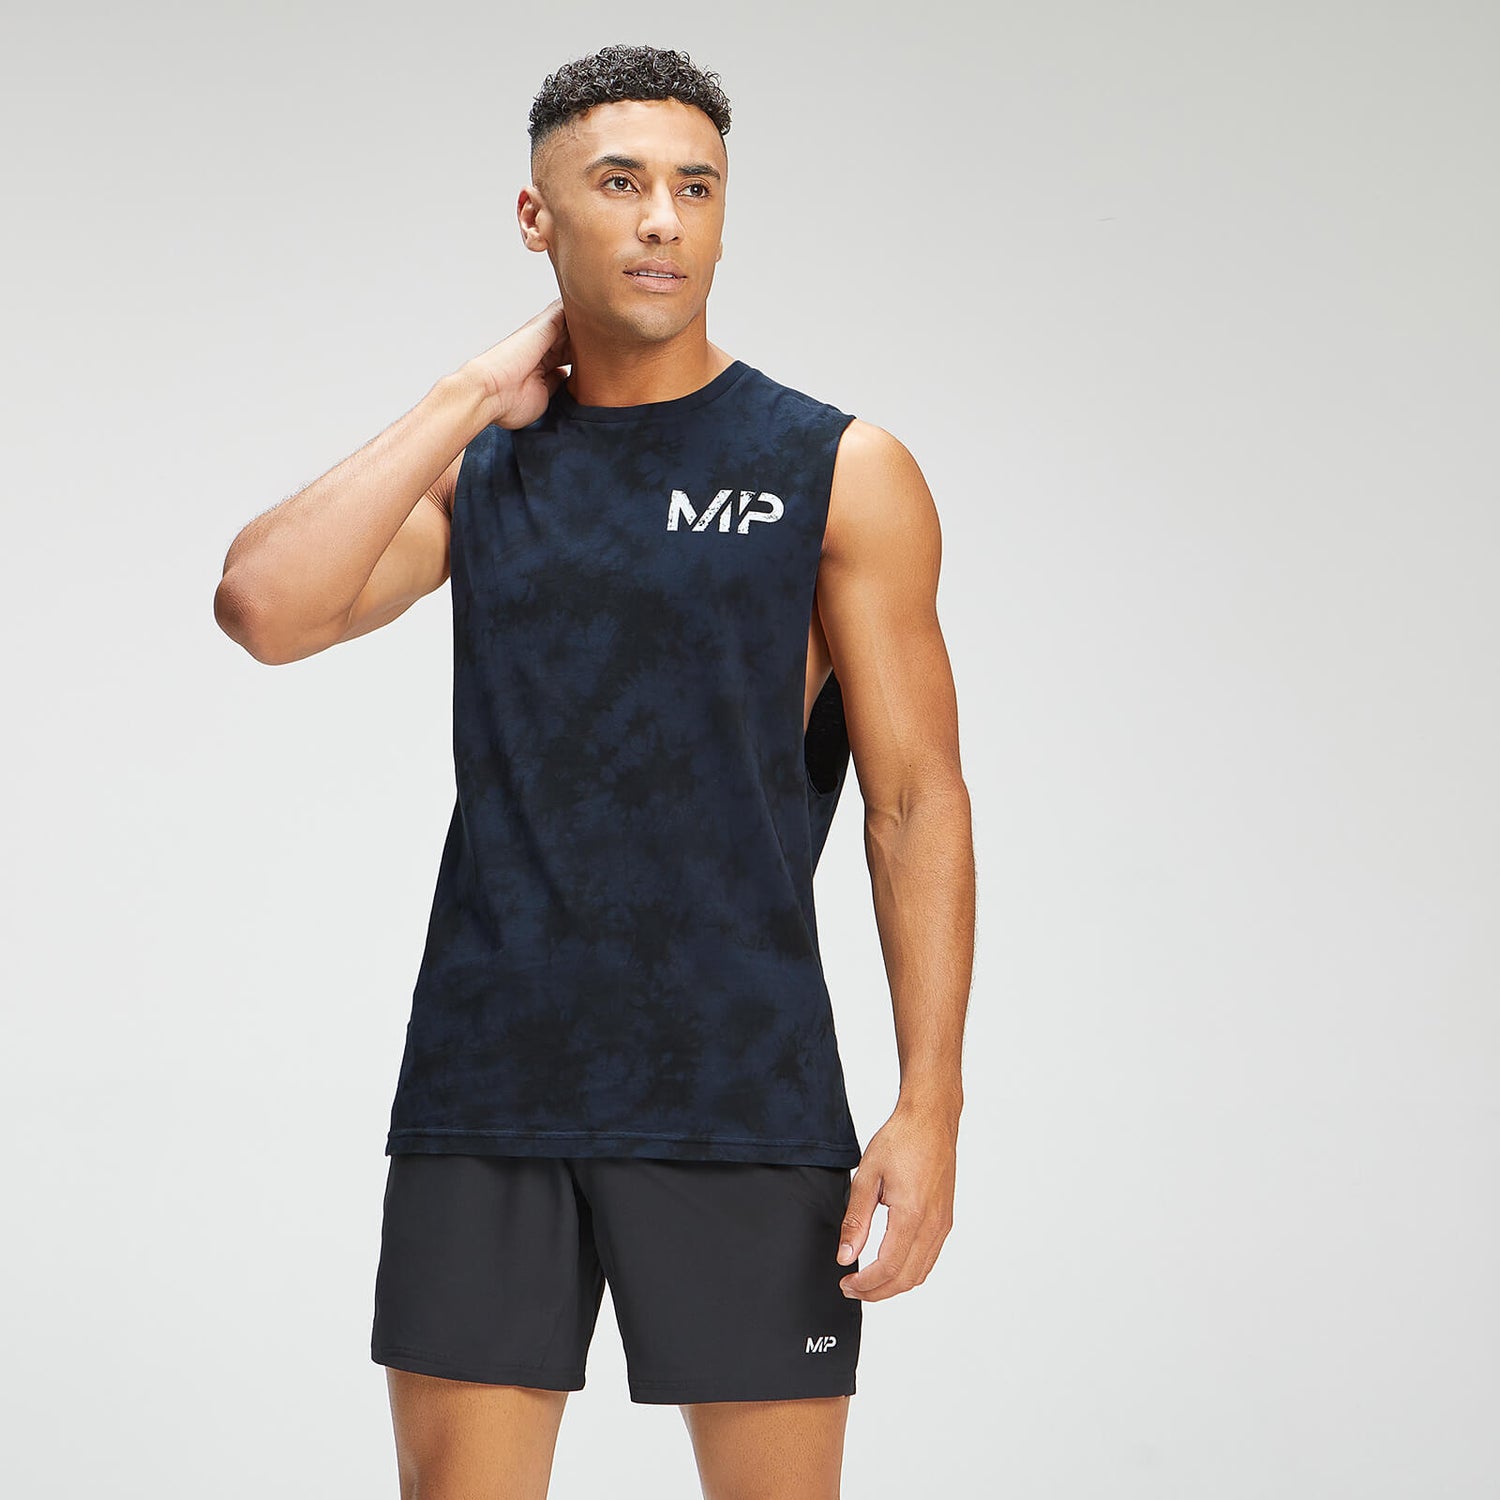 Camiseta de tirantes tie dye Adapt para hombre de MP - Azul oscuro/Negro - XXXL